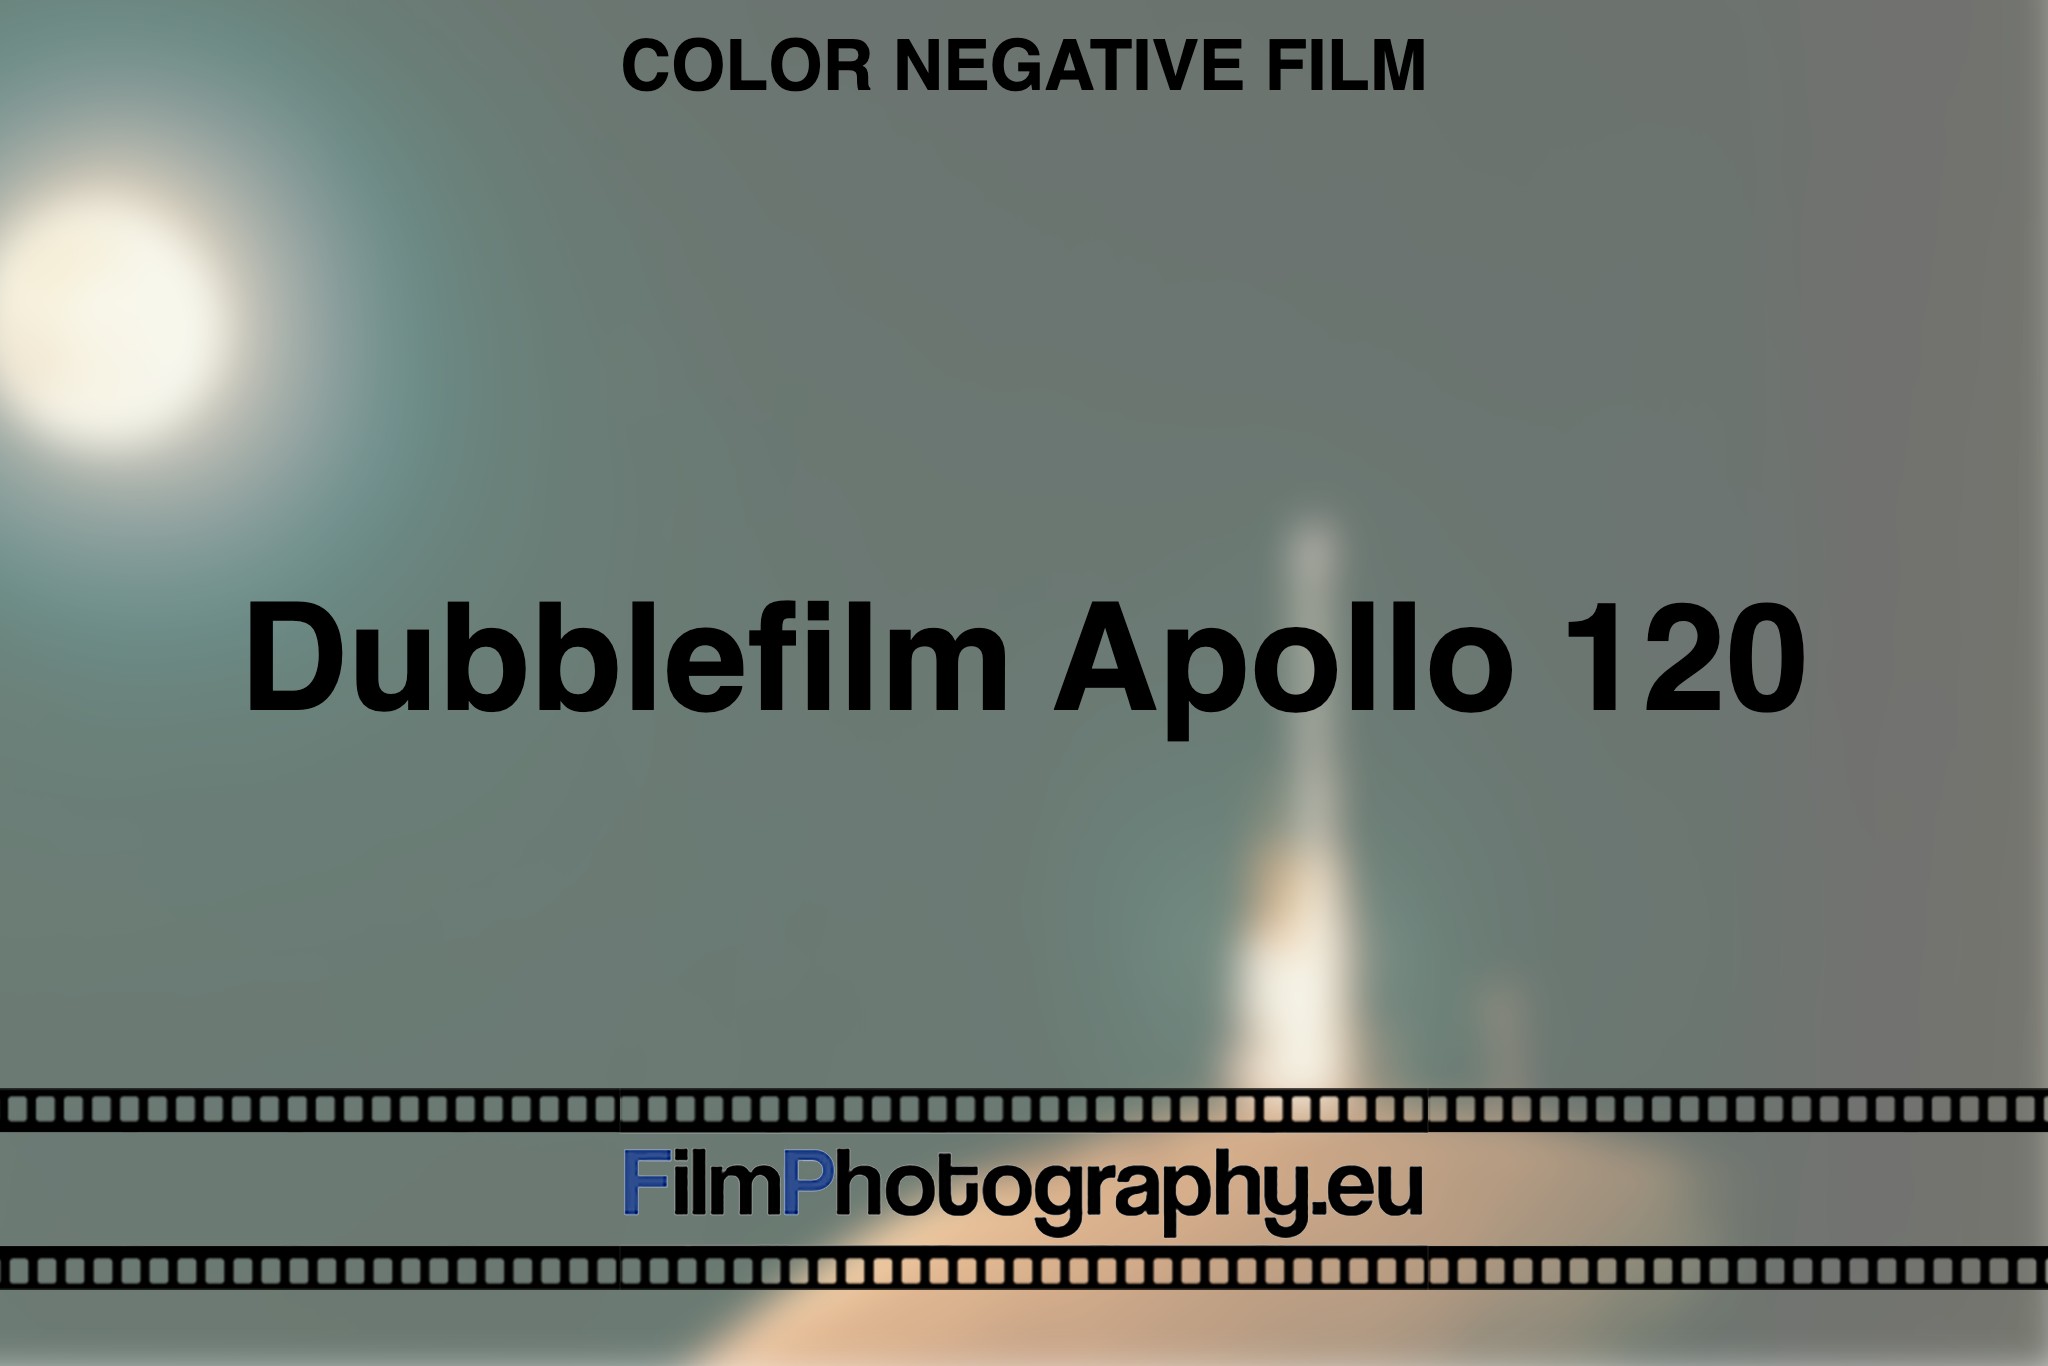 Dubblefilm-Apollo-120-Color-negative-film-bnv